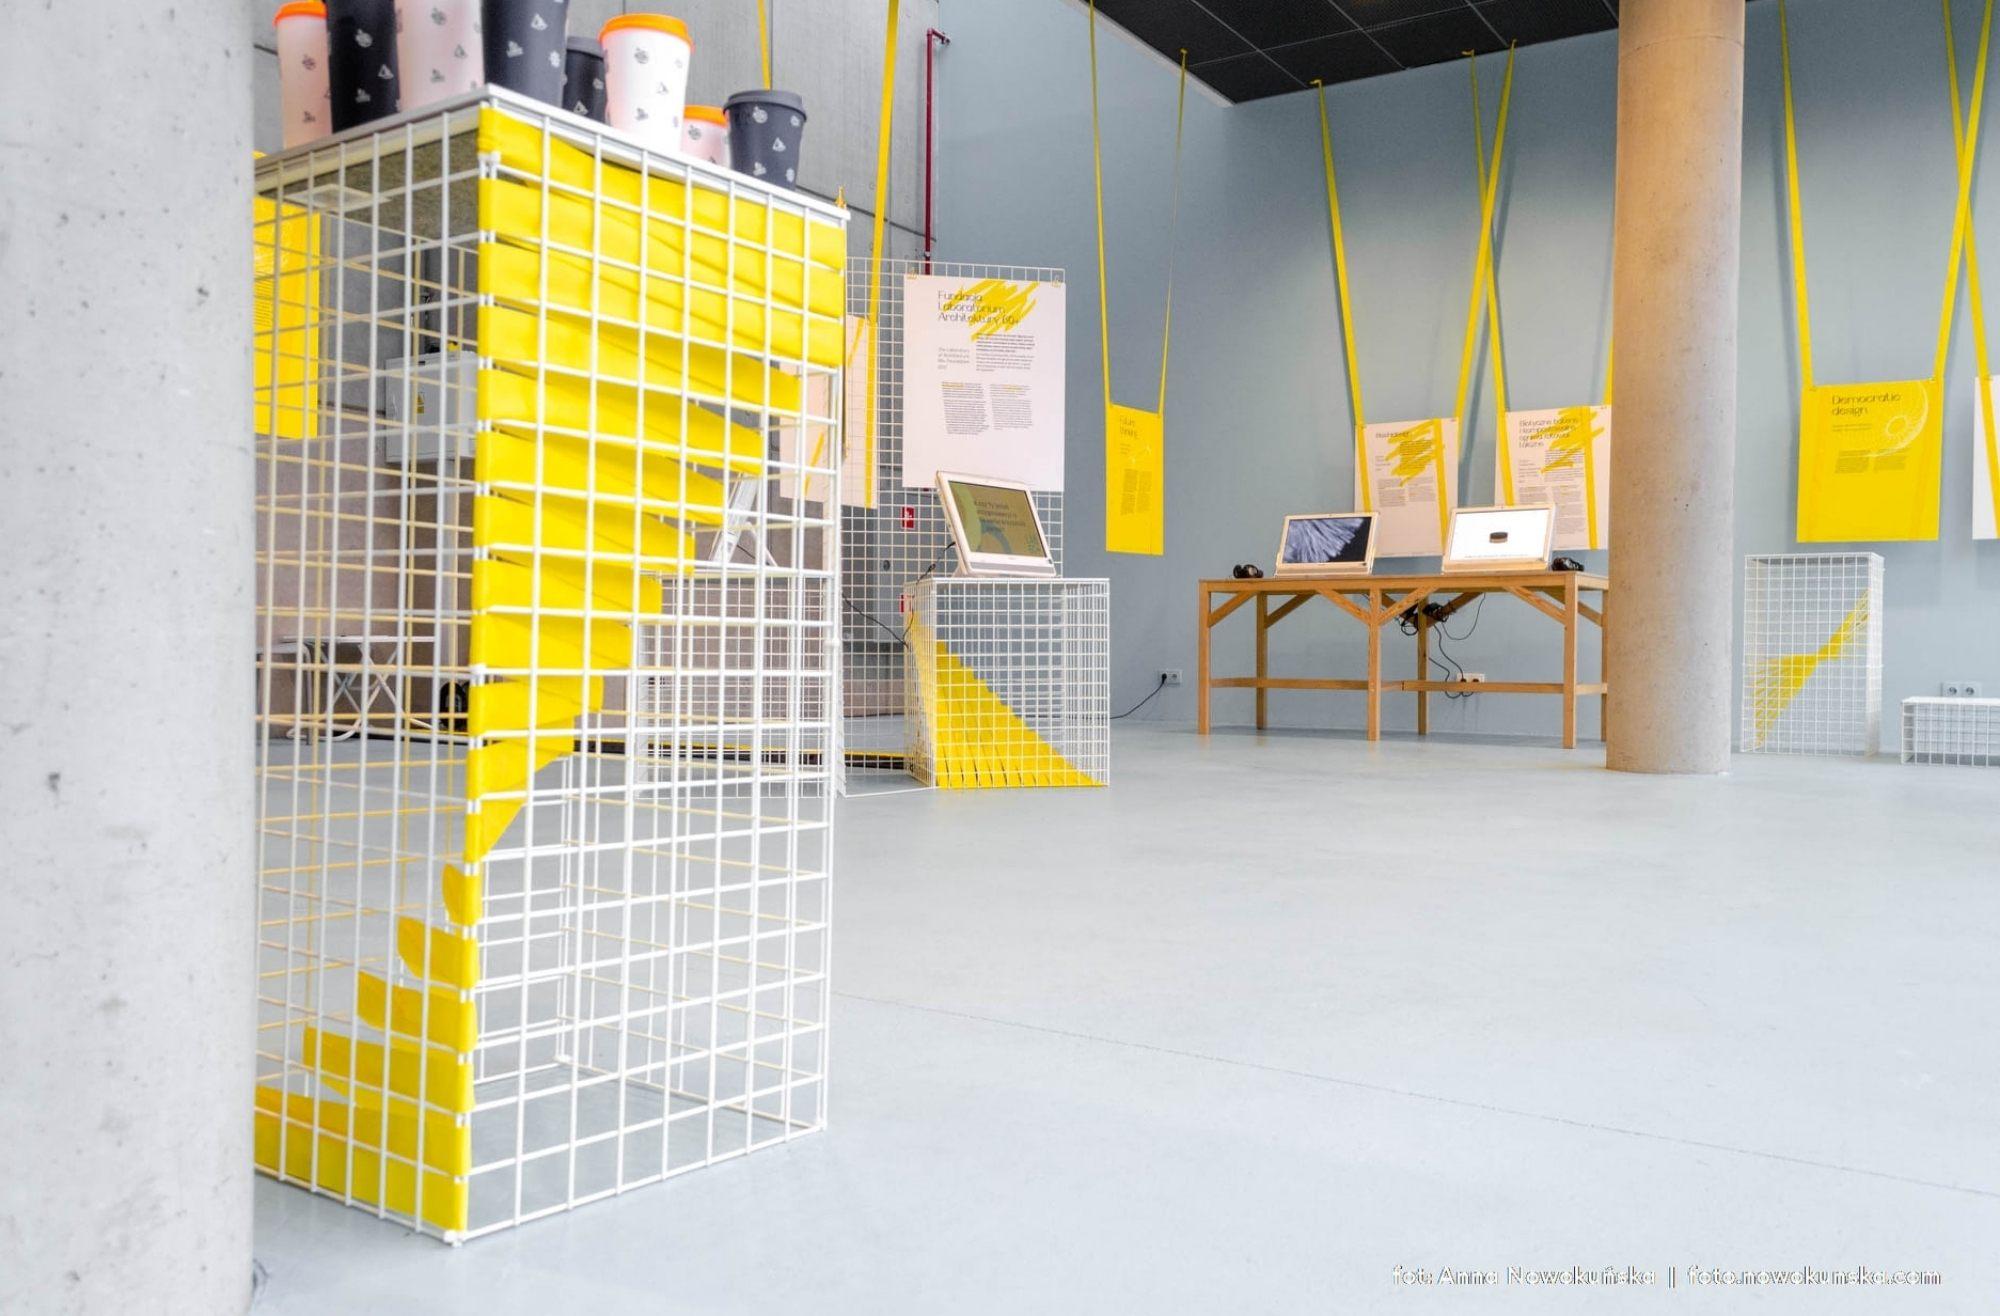 Projekt studentek School of Form na wystawie „Niech żyje design!” w Gdyni